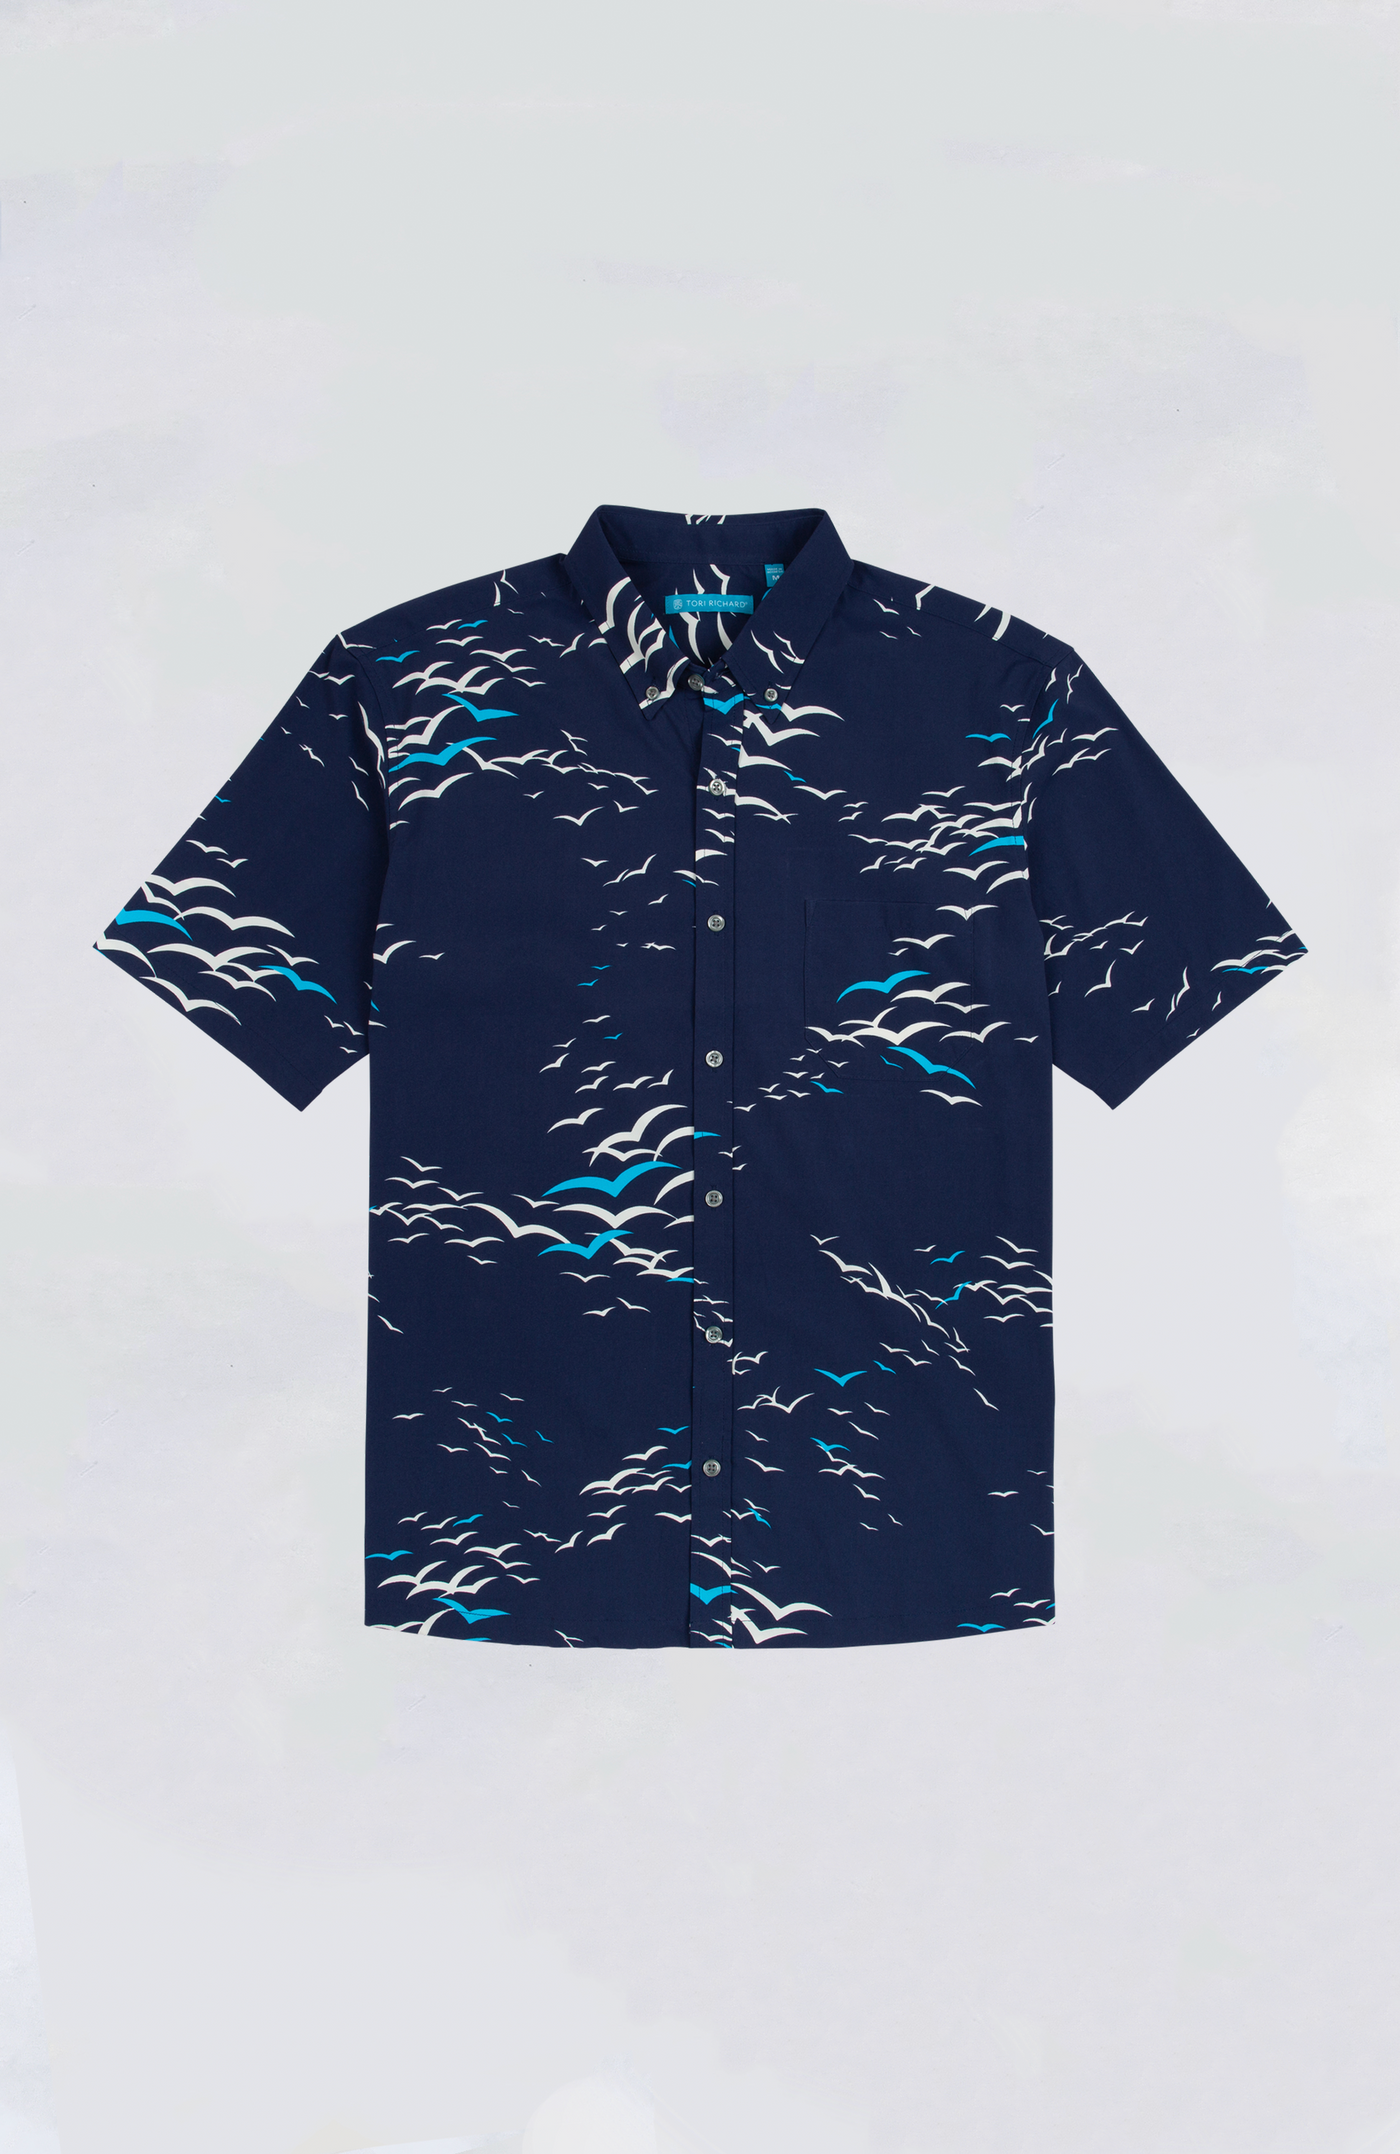 Tori Richard - Snow Birds Aloha Shirt